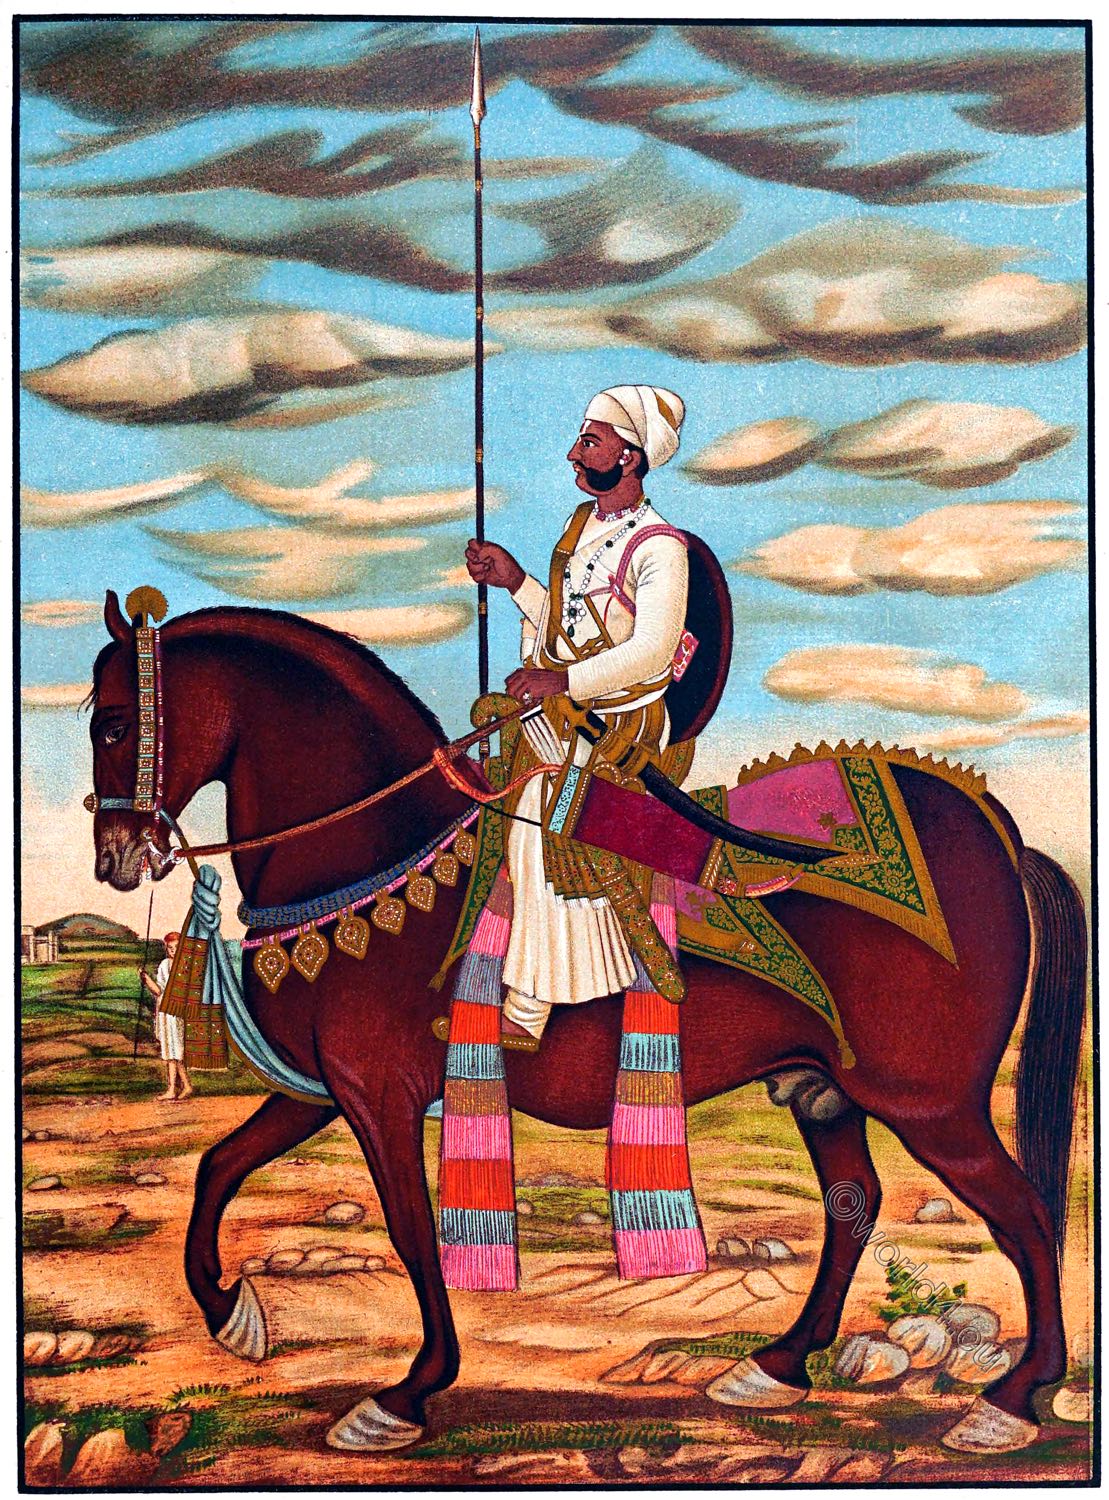 H.H. Raja Shri Sawai Pratap Sinhji Bahadur, Rao Raja of Alwar.